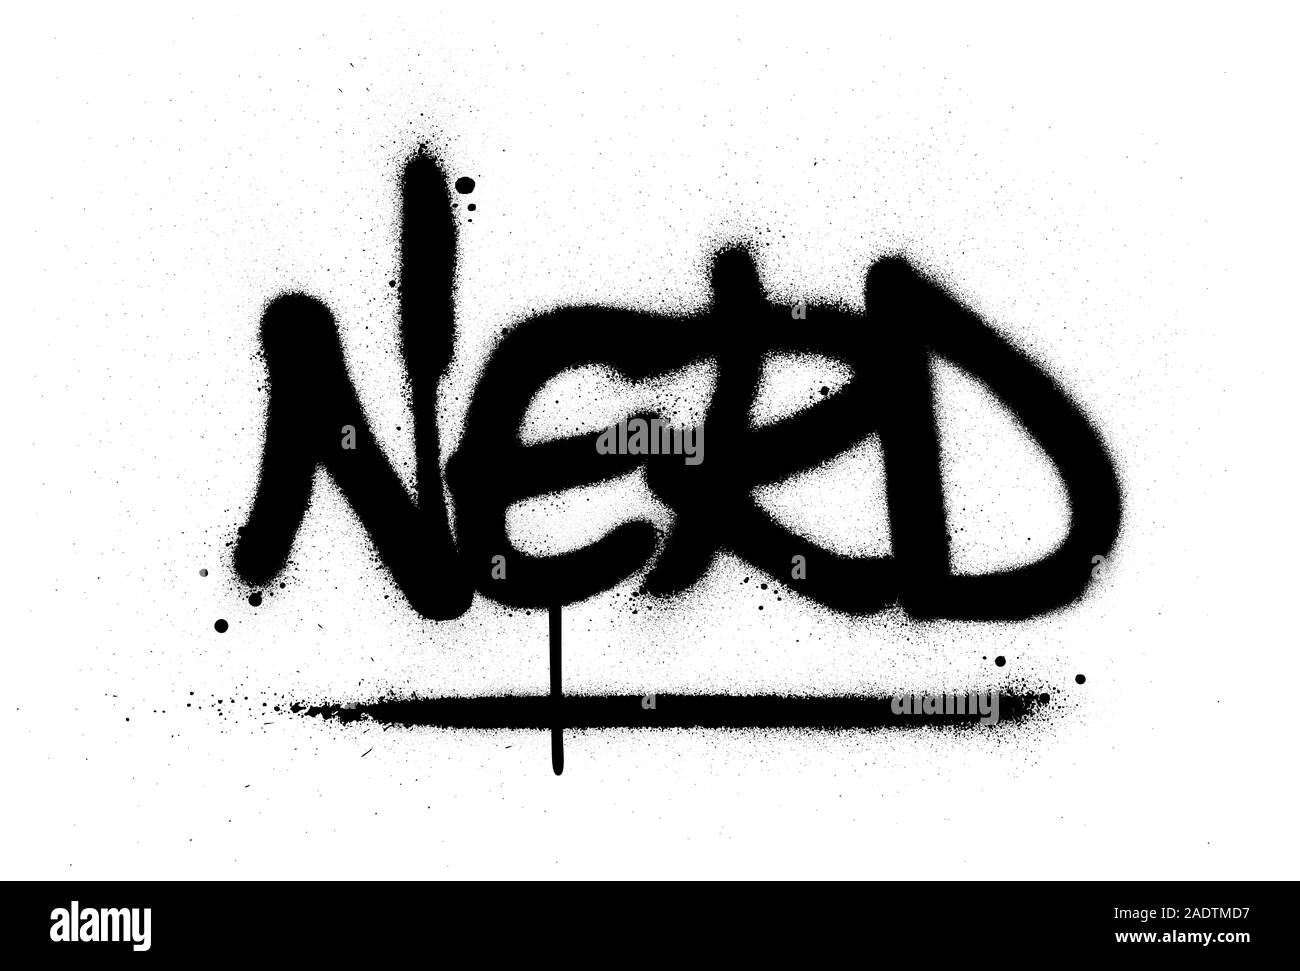 graffiti nerd word sprayed in black over white Stock Vector